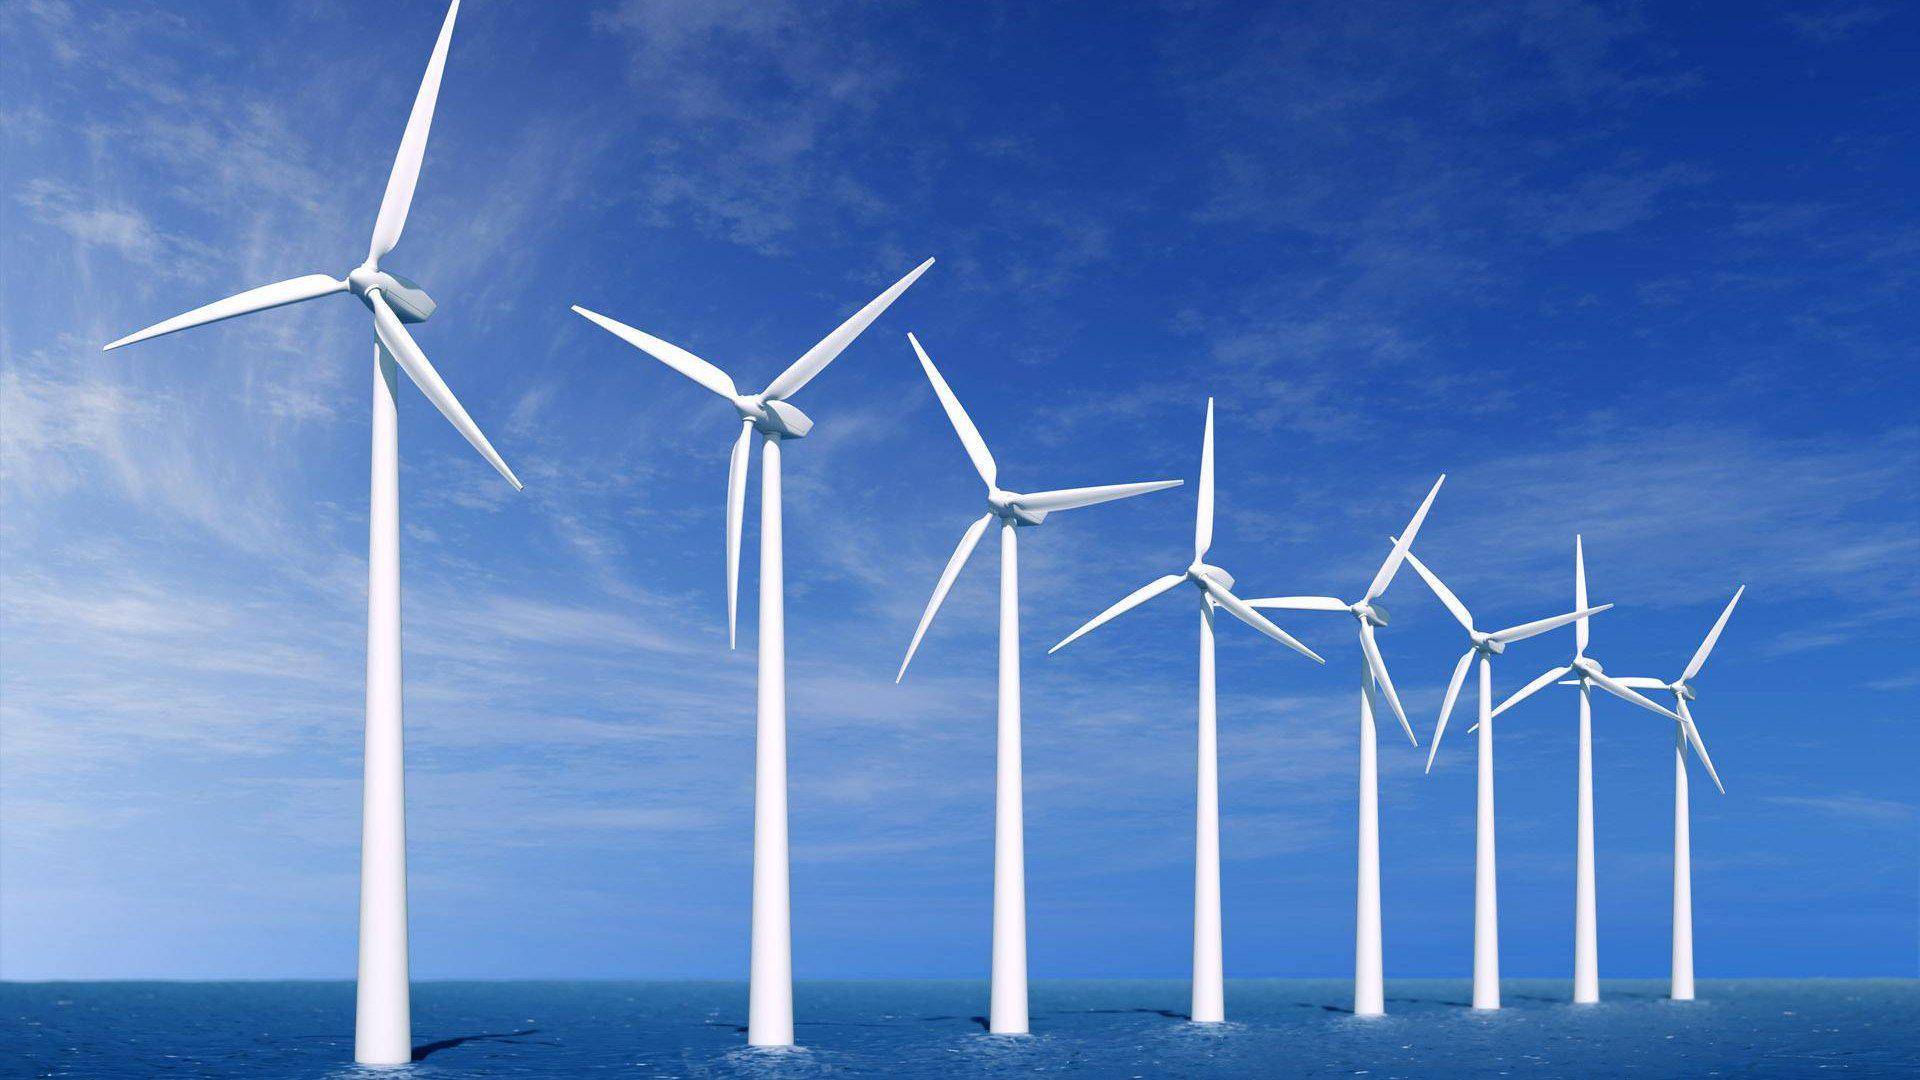 海上風電成為越南發展新能源的雙重機遇